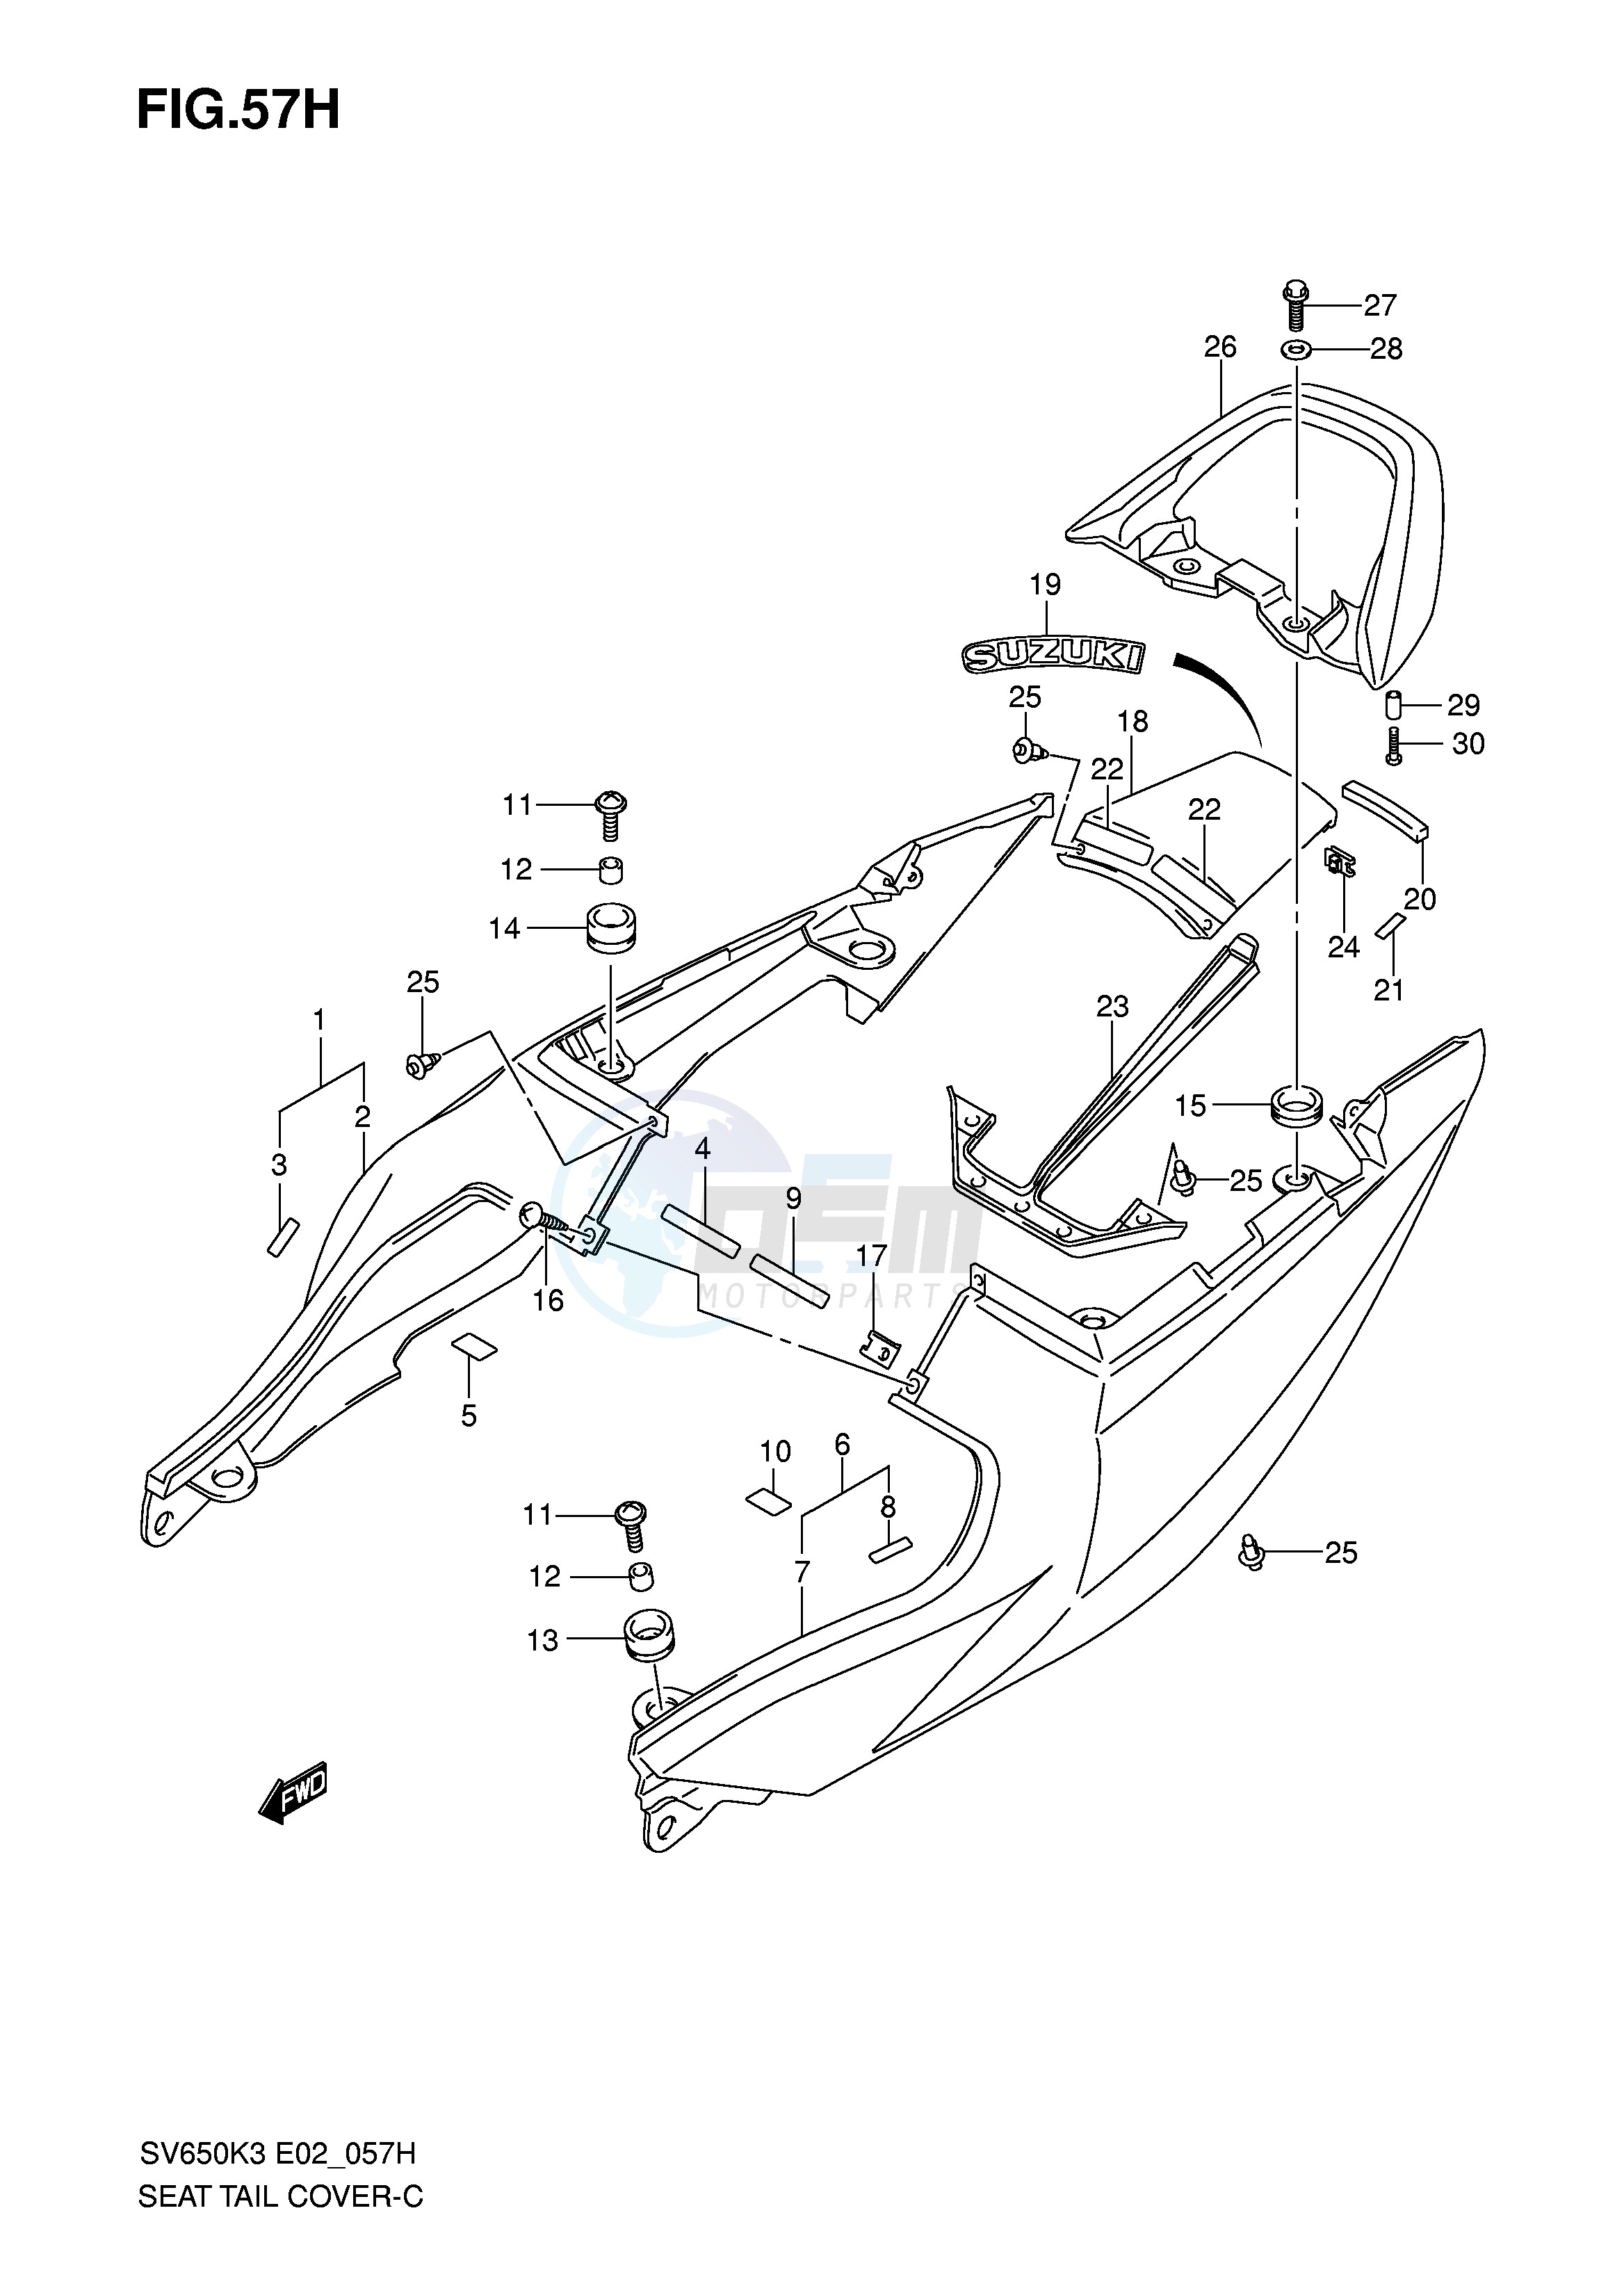 SEAT TAIL COVER (SV650SK7 SUK7 SAK7 SUAK7) blueprint